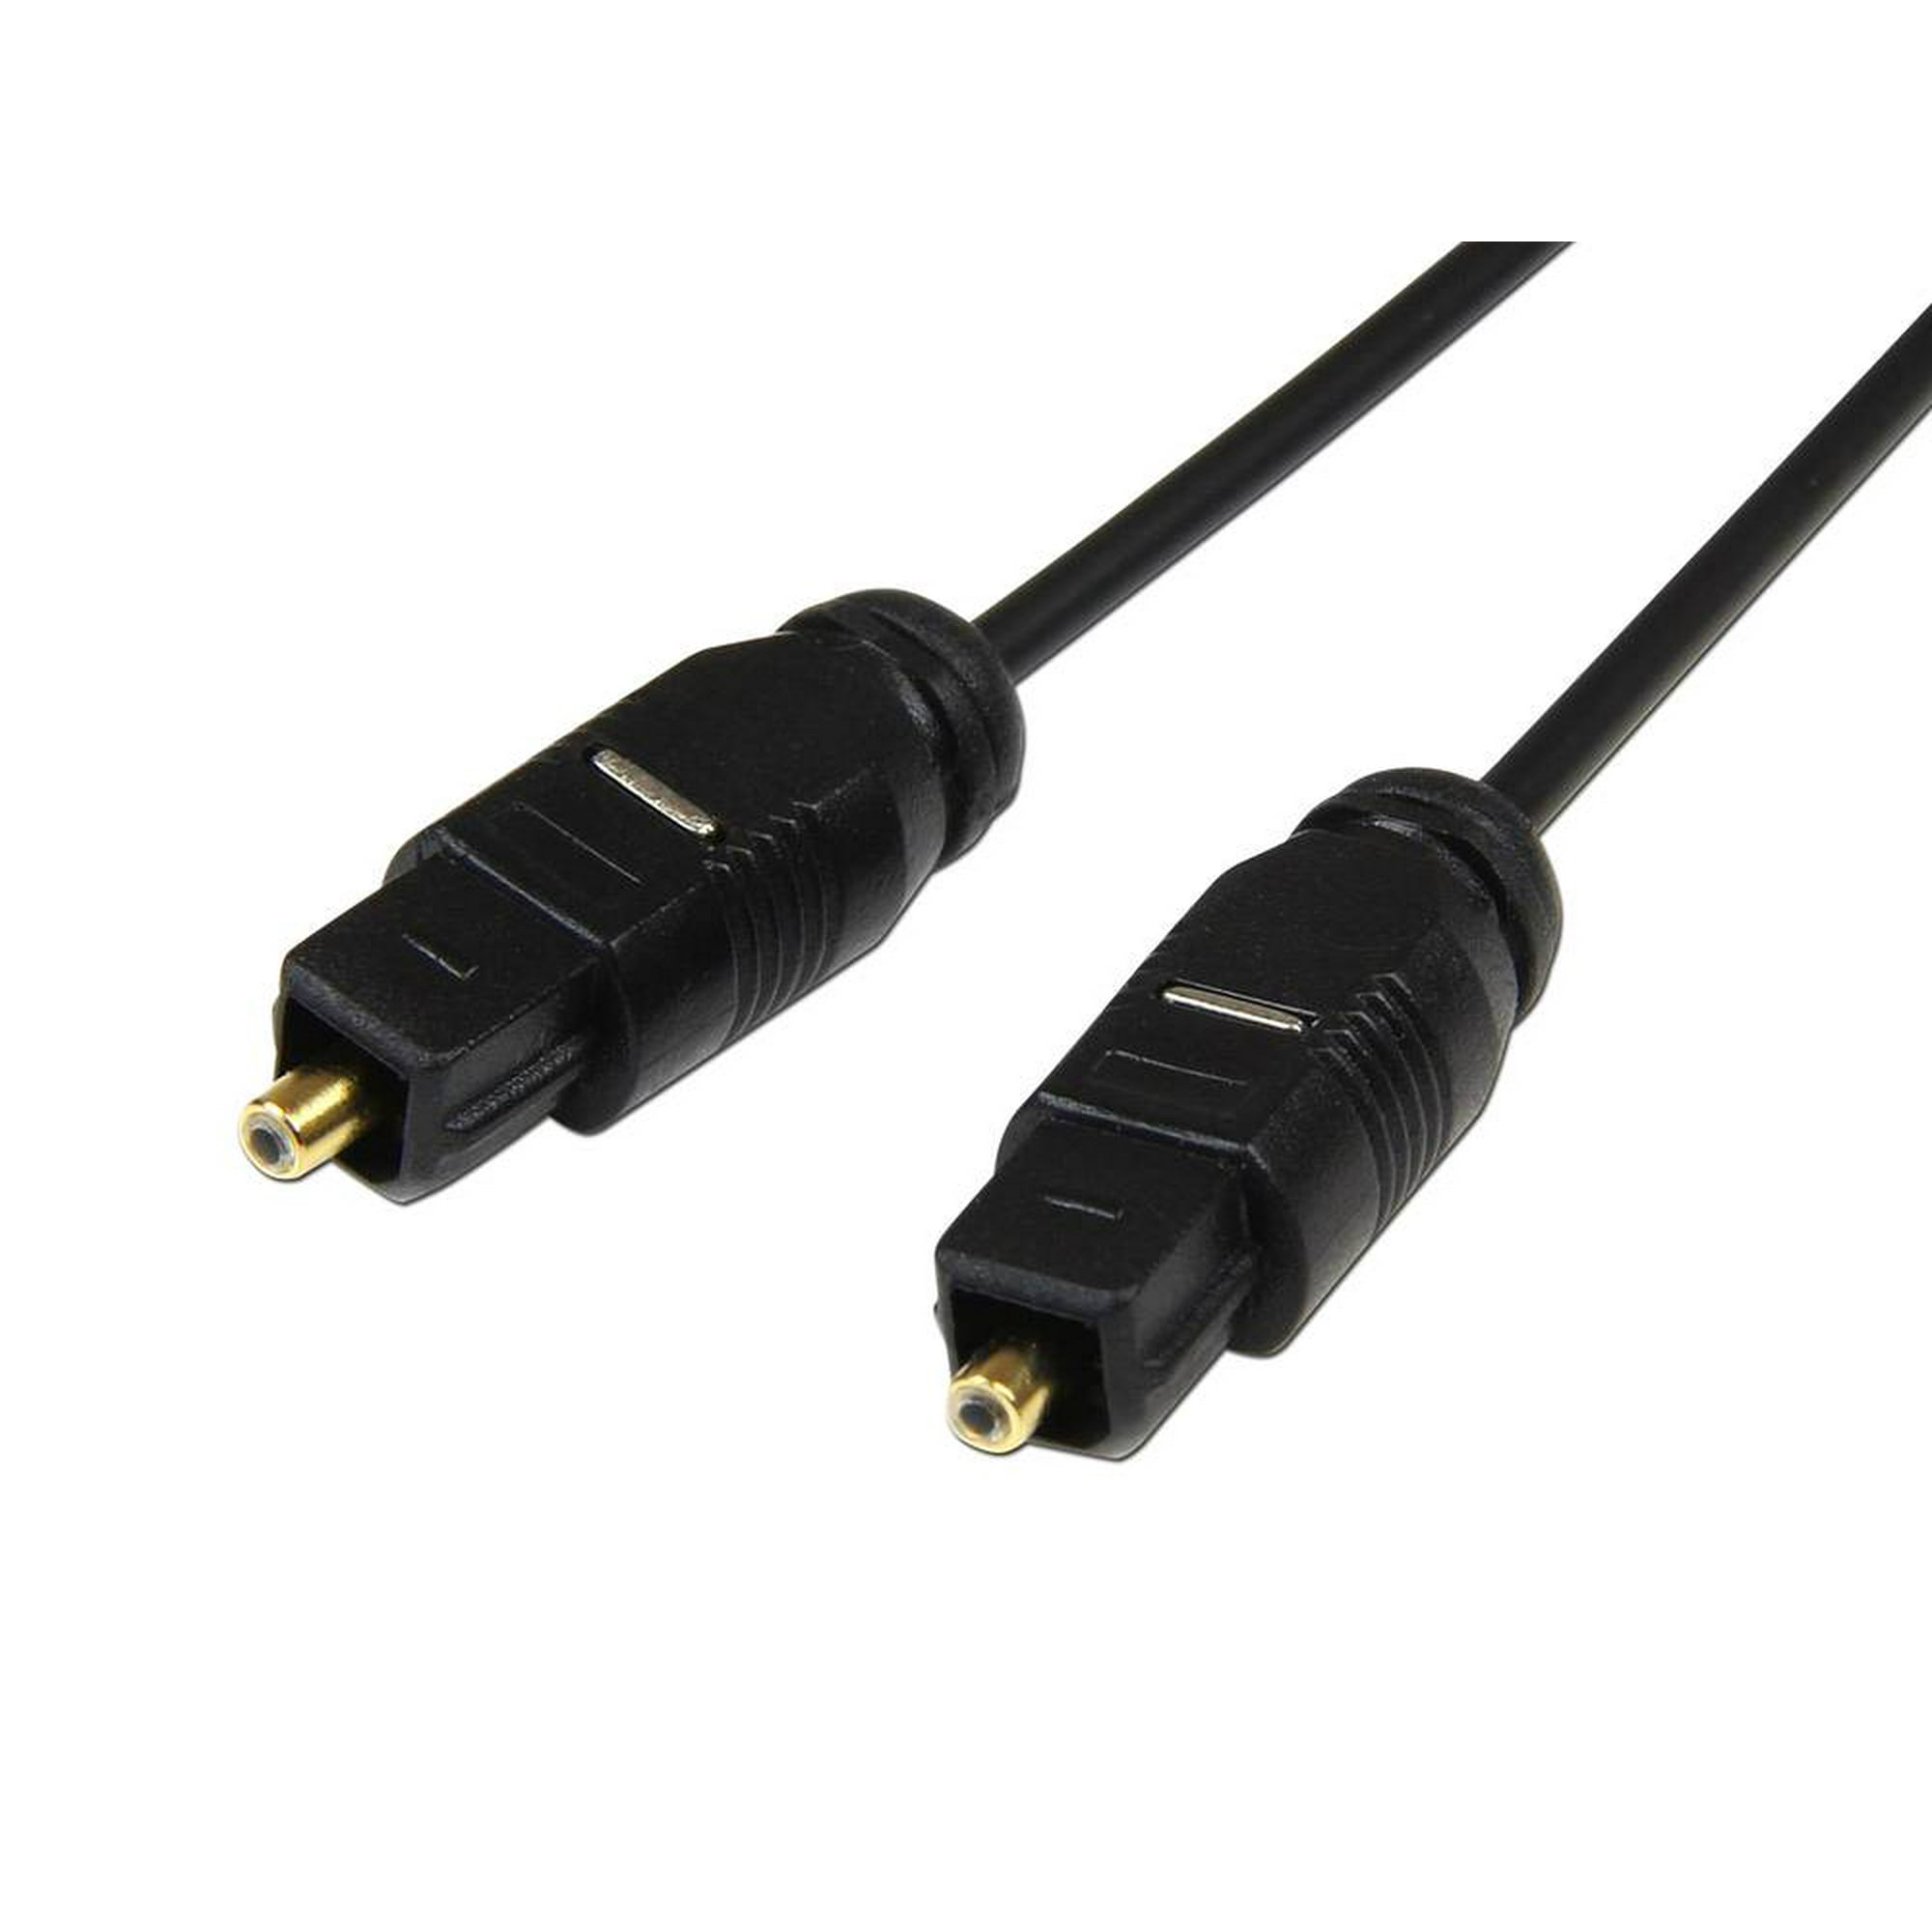 Cable de audio óptico digital, 1 en 2 salidas de doble puerto adaptador de  divisor de audio óptico digital Cable de audio Fibra óptica digital (negro)